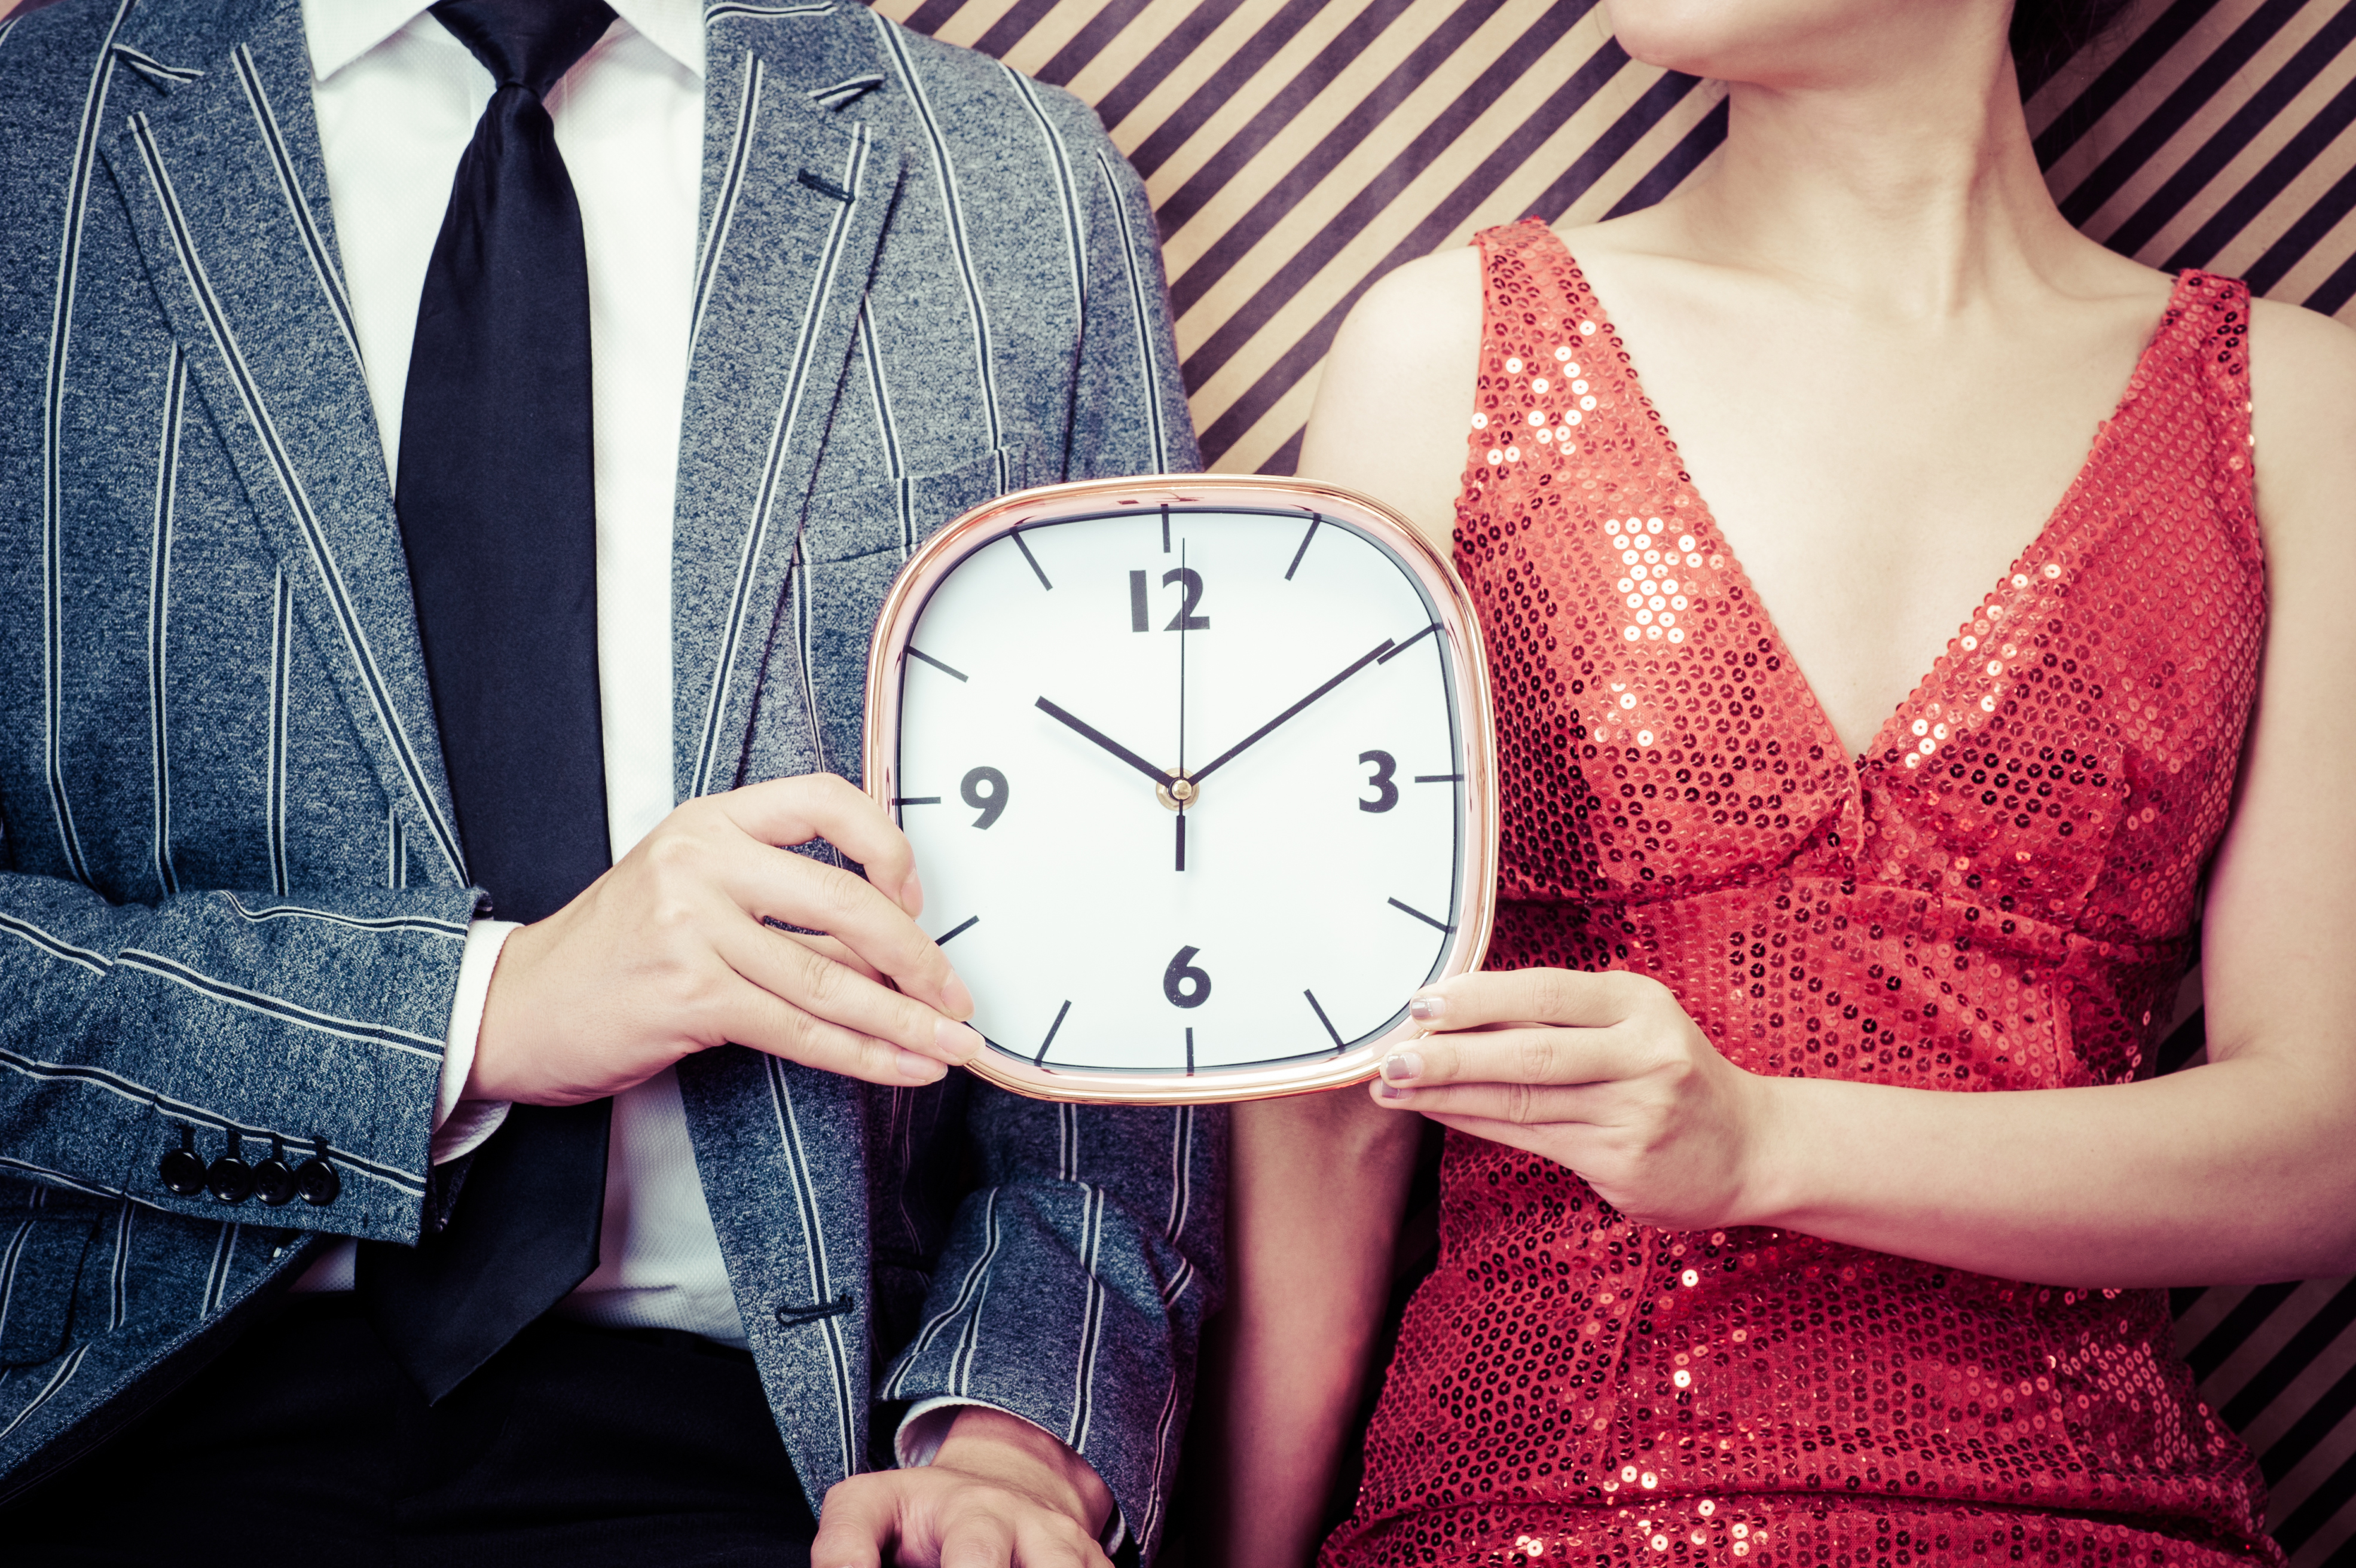 Speed dating - najszybszy sposób na znalezienie miłości